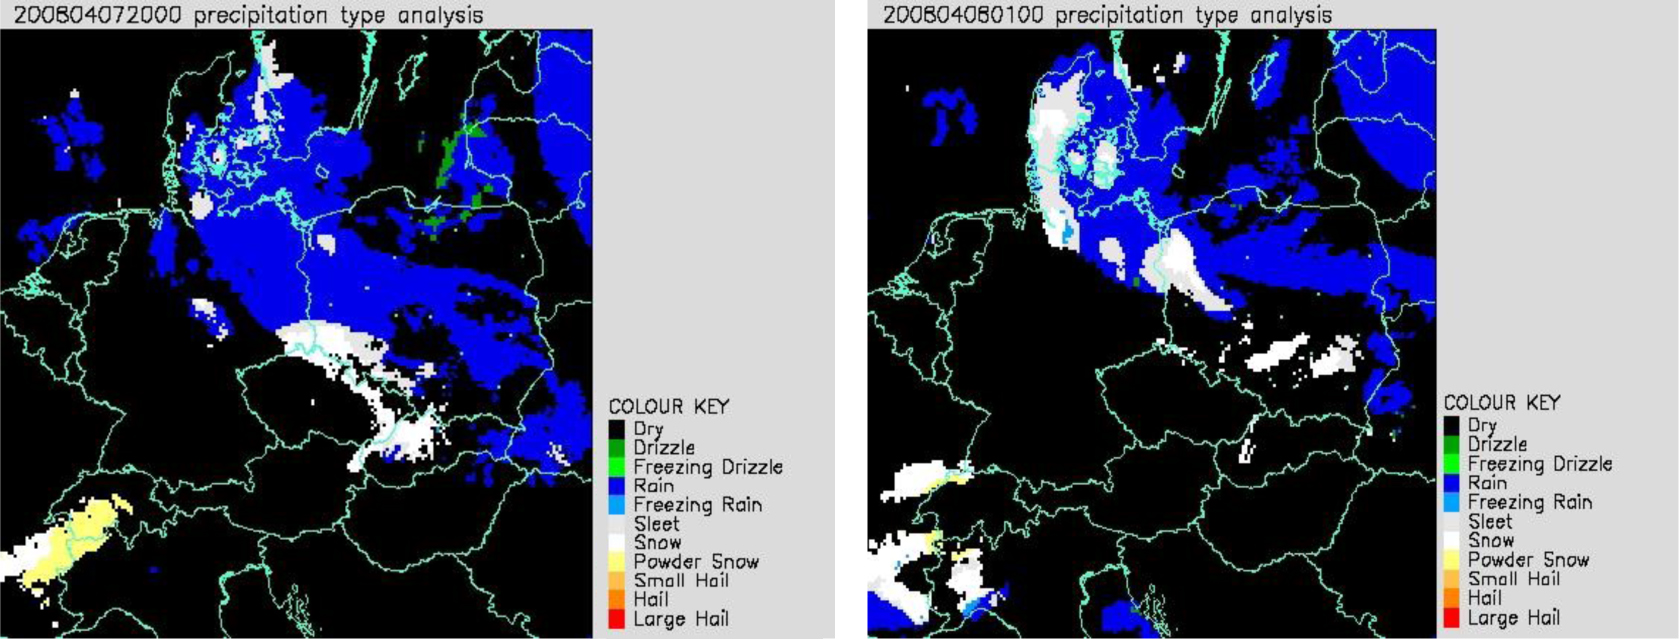 Zdjęcie z godz. 20.00 UTC z 07.04.2008 r. (po lewej) i godz. 01.00 UTC z 08.04.2008 r. (po prawej). Analiza typu opadów: kolor biało szary i biały – opady odpowiednio deszczu ze śniegiem i śniegu, kolor granatowy – opady deszczu. 